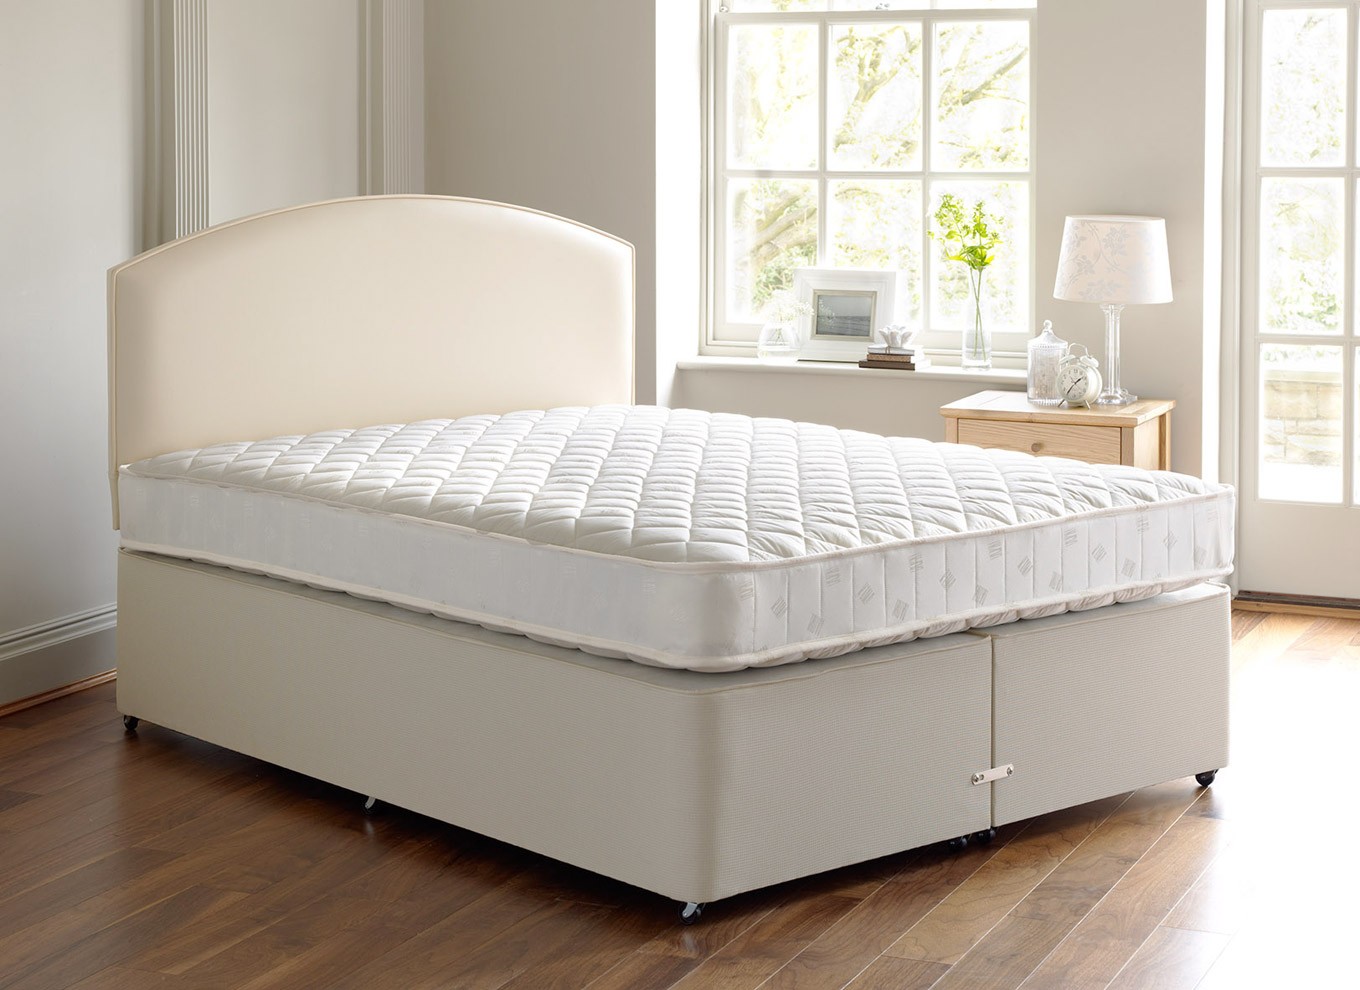 Купить кровать на озоне с матрасом. Высокая кровать. Кровать с ортопидическимматрасом. Кровать с матрасом. Кровать с высоким матрасом.